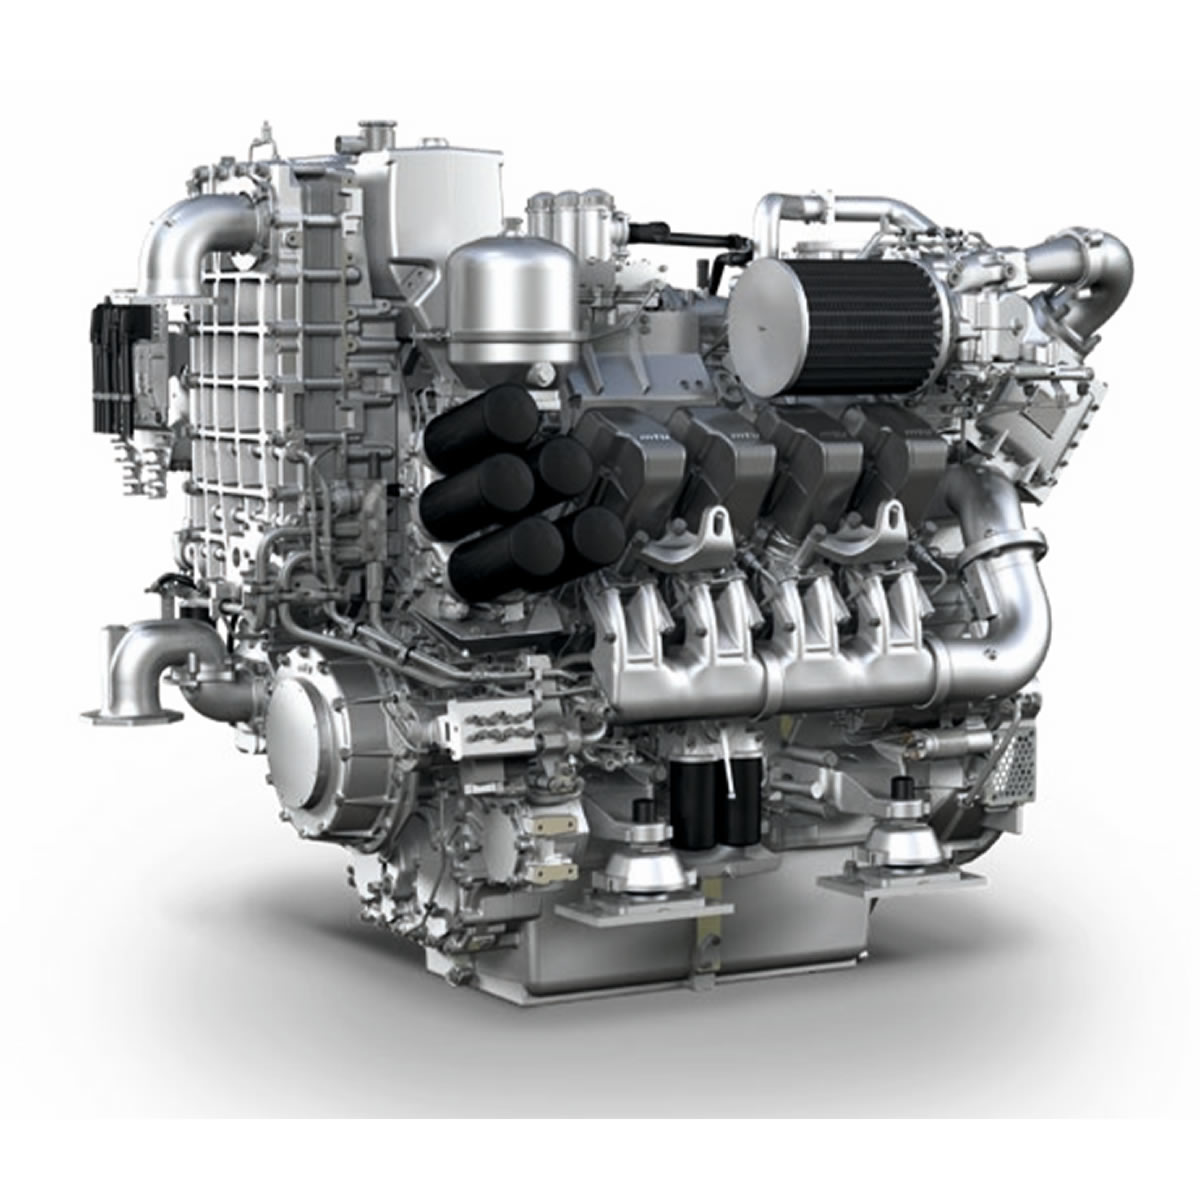 Какой надежный дизельный двигатель. MTU 8v4000. MTU Detroit Diesel 16v4000. MTU 8v 2000 m72. Двигатель MTU 6r183td13h.